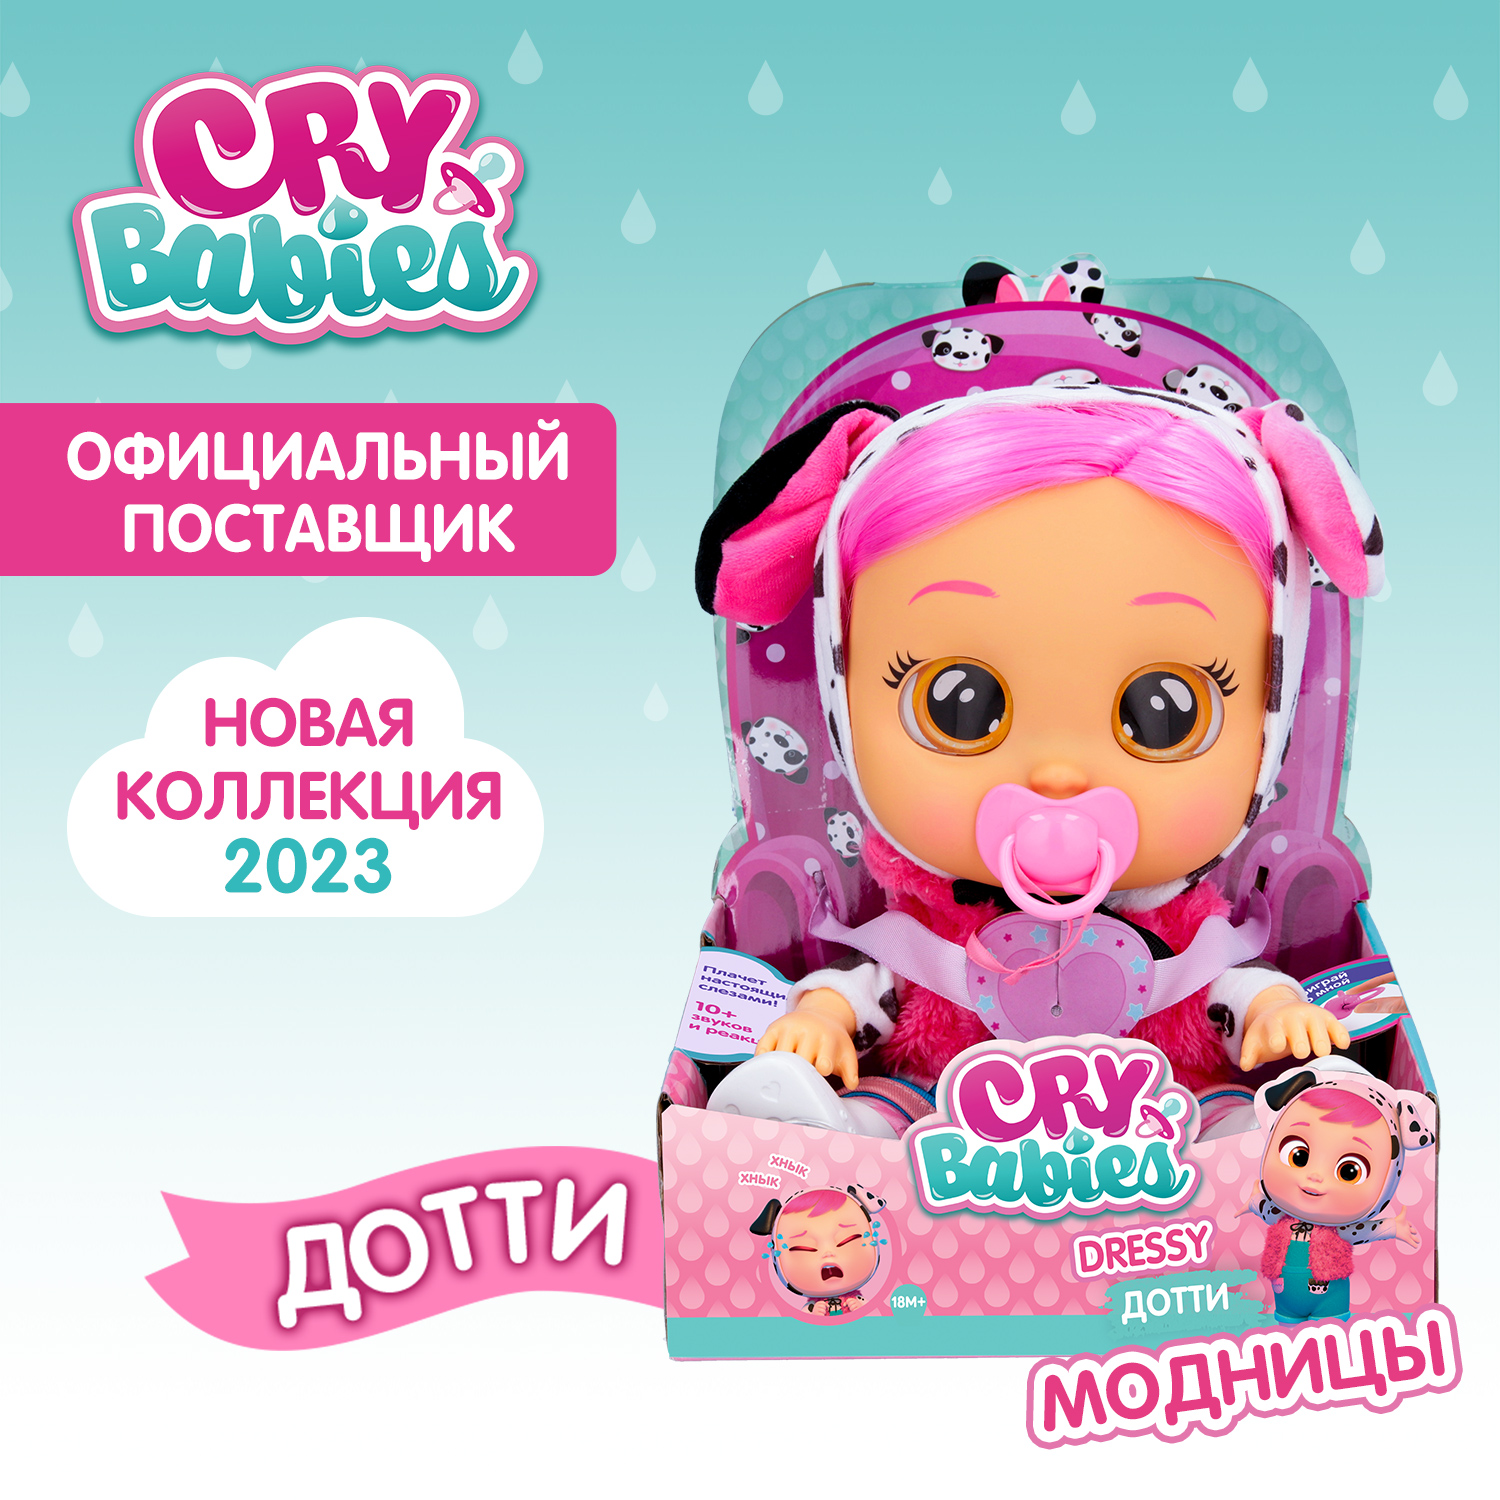 Кукла Cry Babies Дотти Модница, интерактивная, плачущая, 40884 кукла cry babies край бебис тина малышка интерактивная плачущая 41038